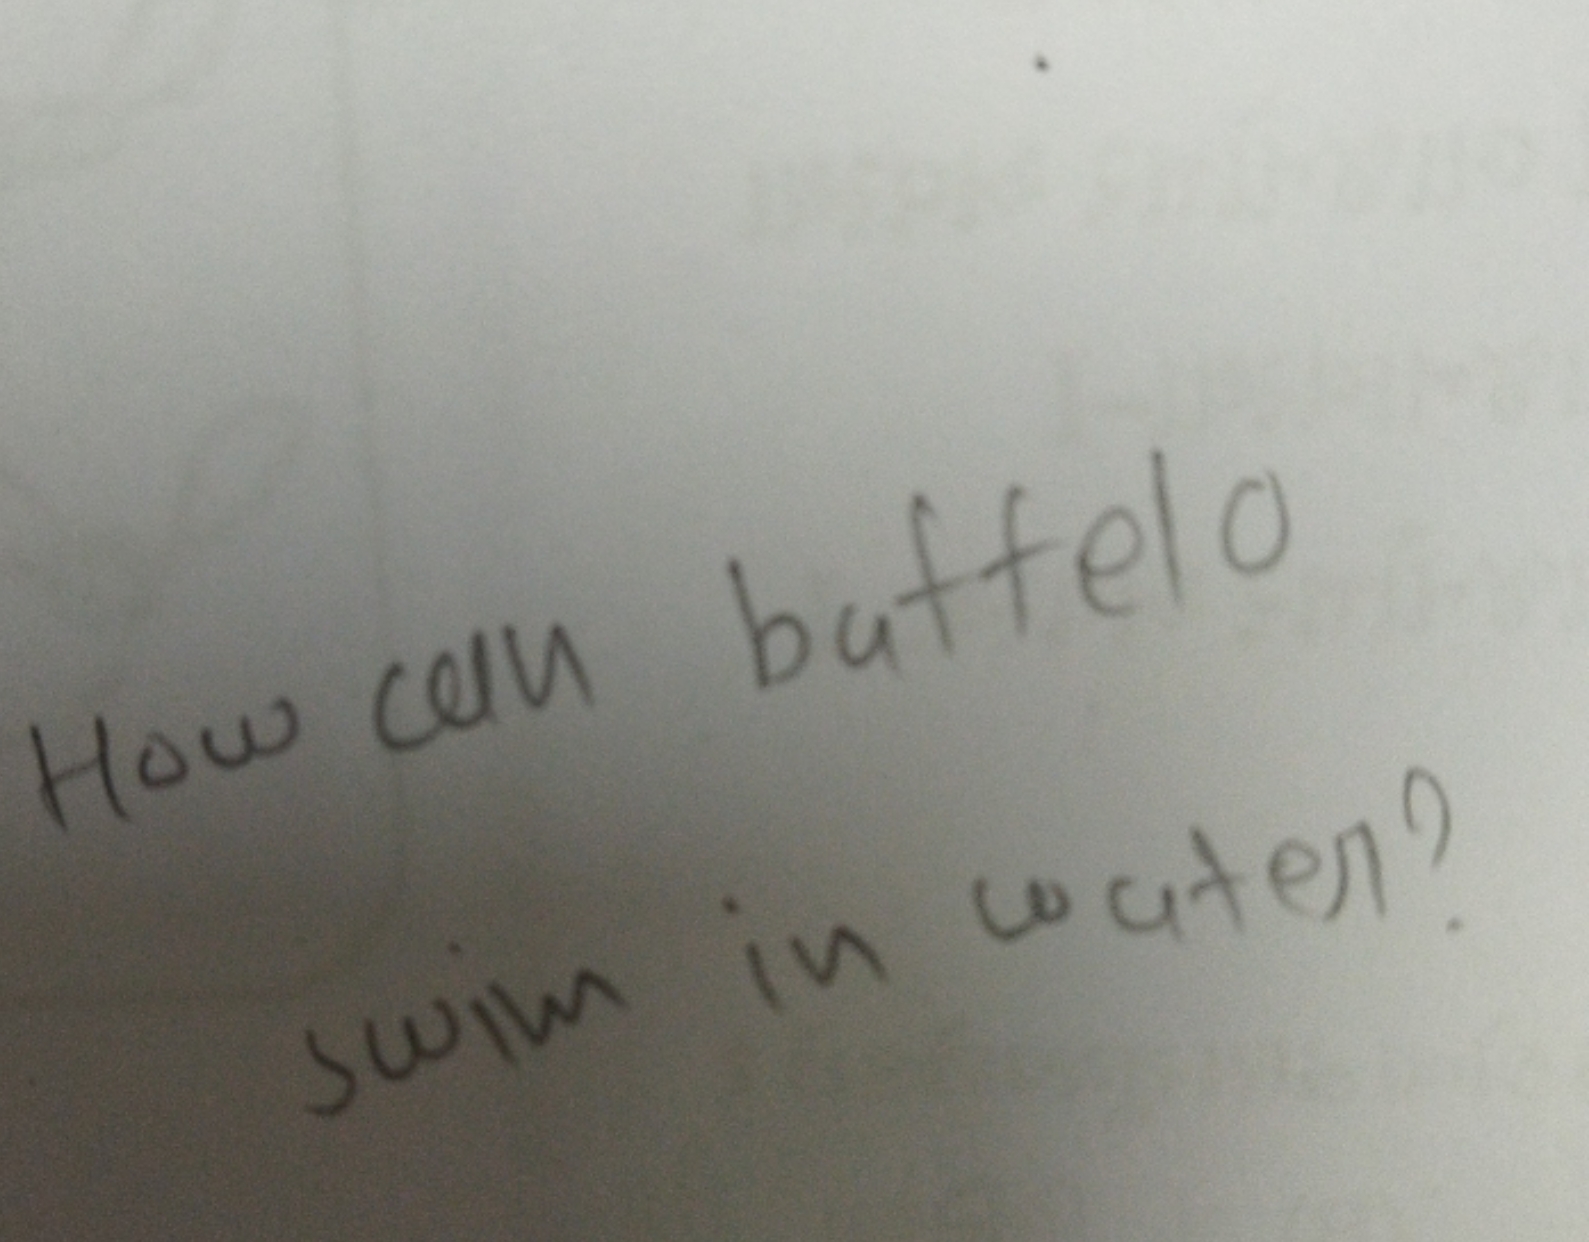 How an buttelo swiw in water?
